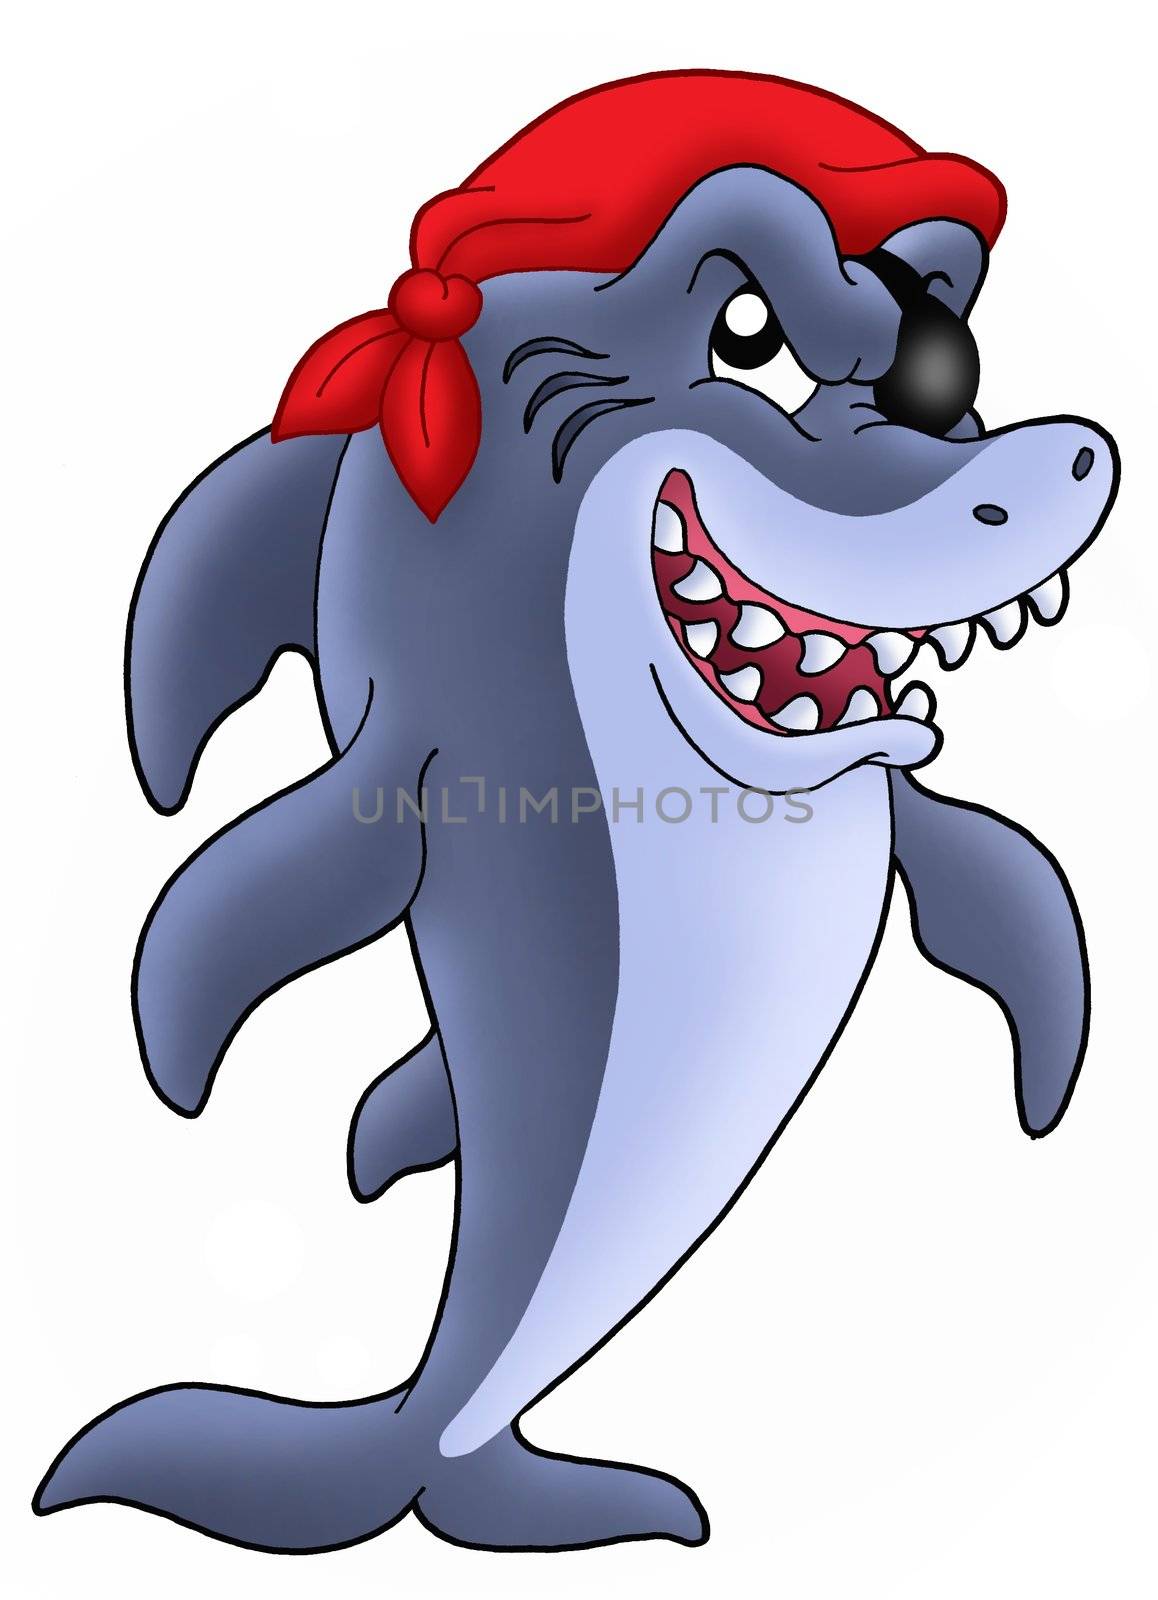 Blue pirate shark - color illustration.